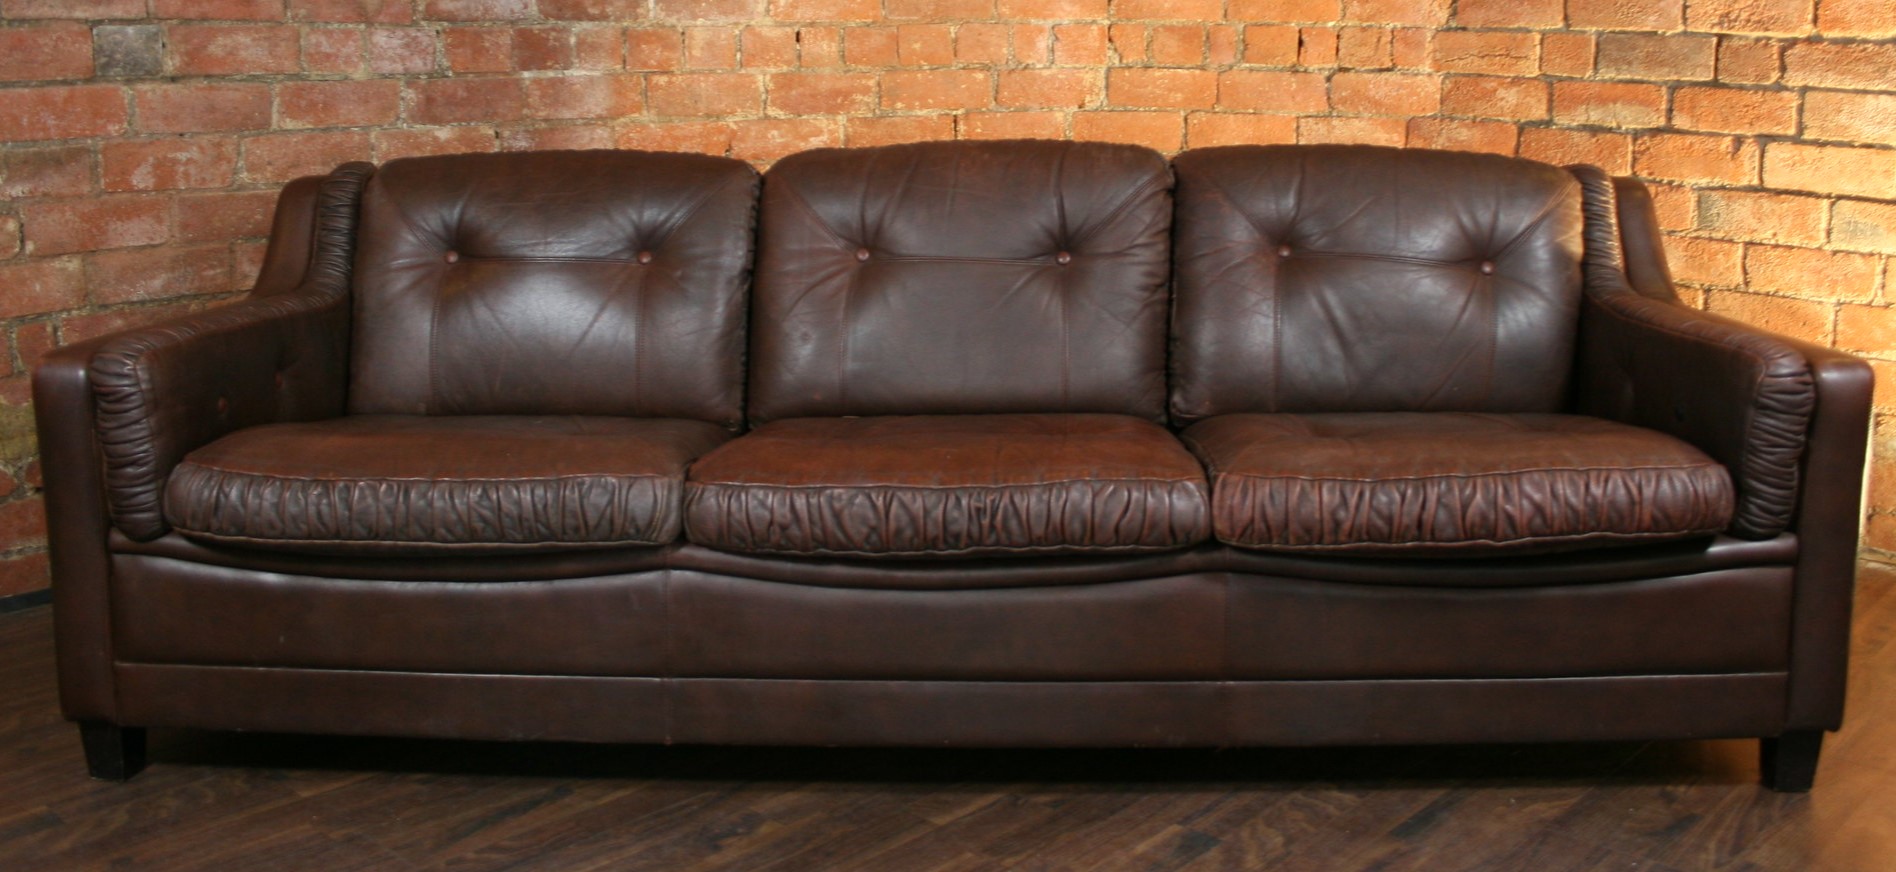 Темно-коричневый диван идеально дополнит интерьер в стиле лофт